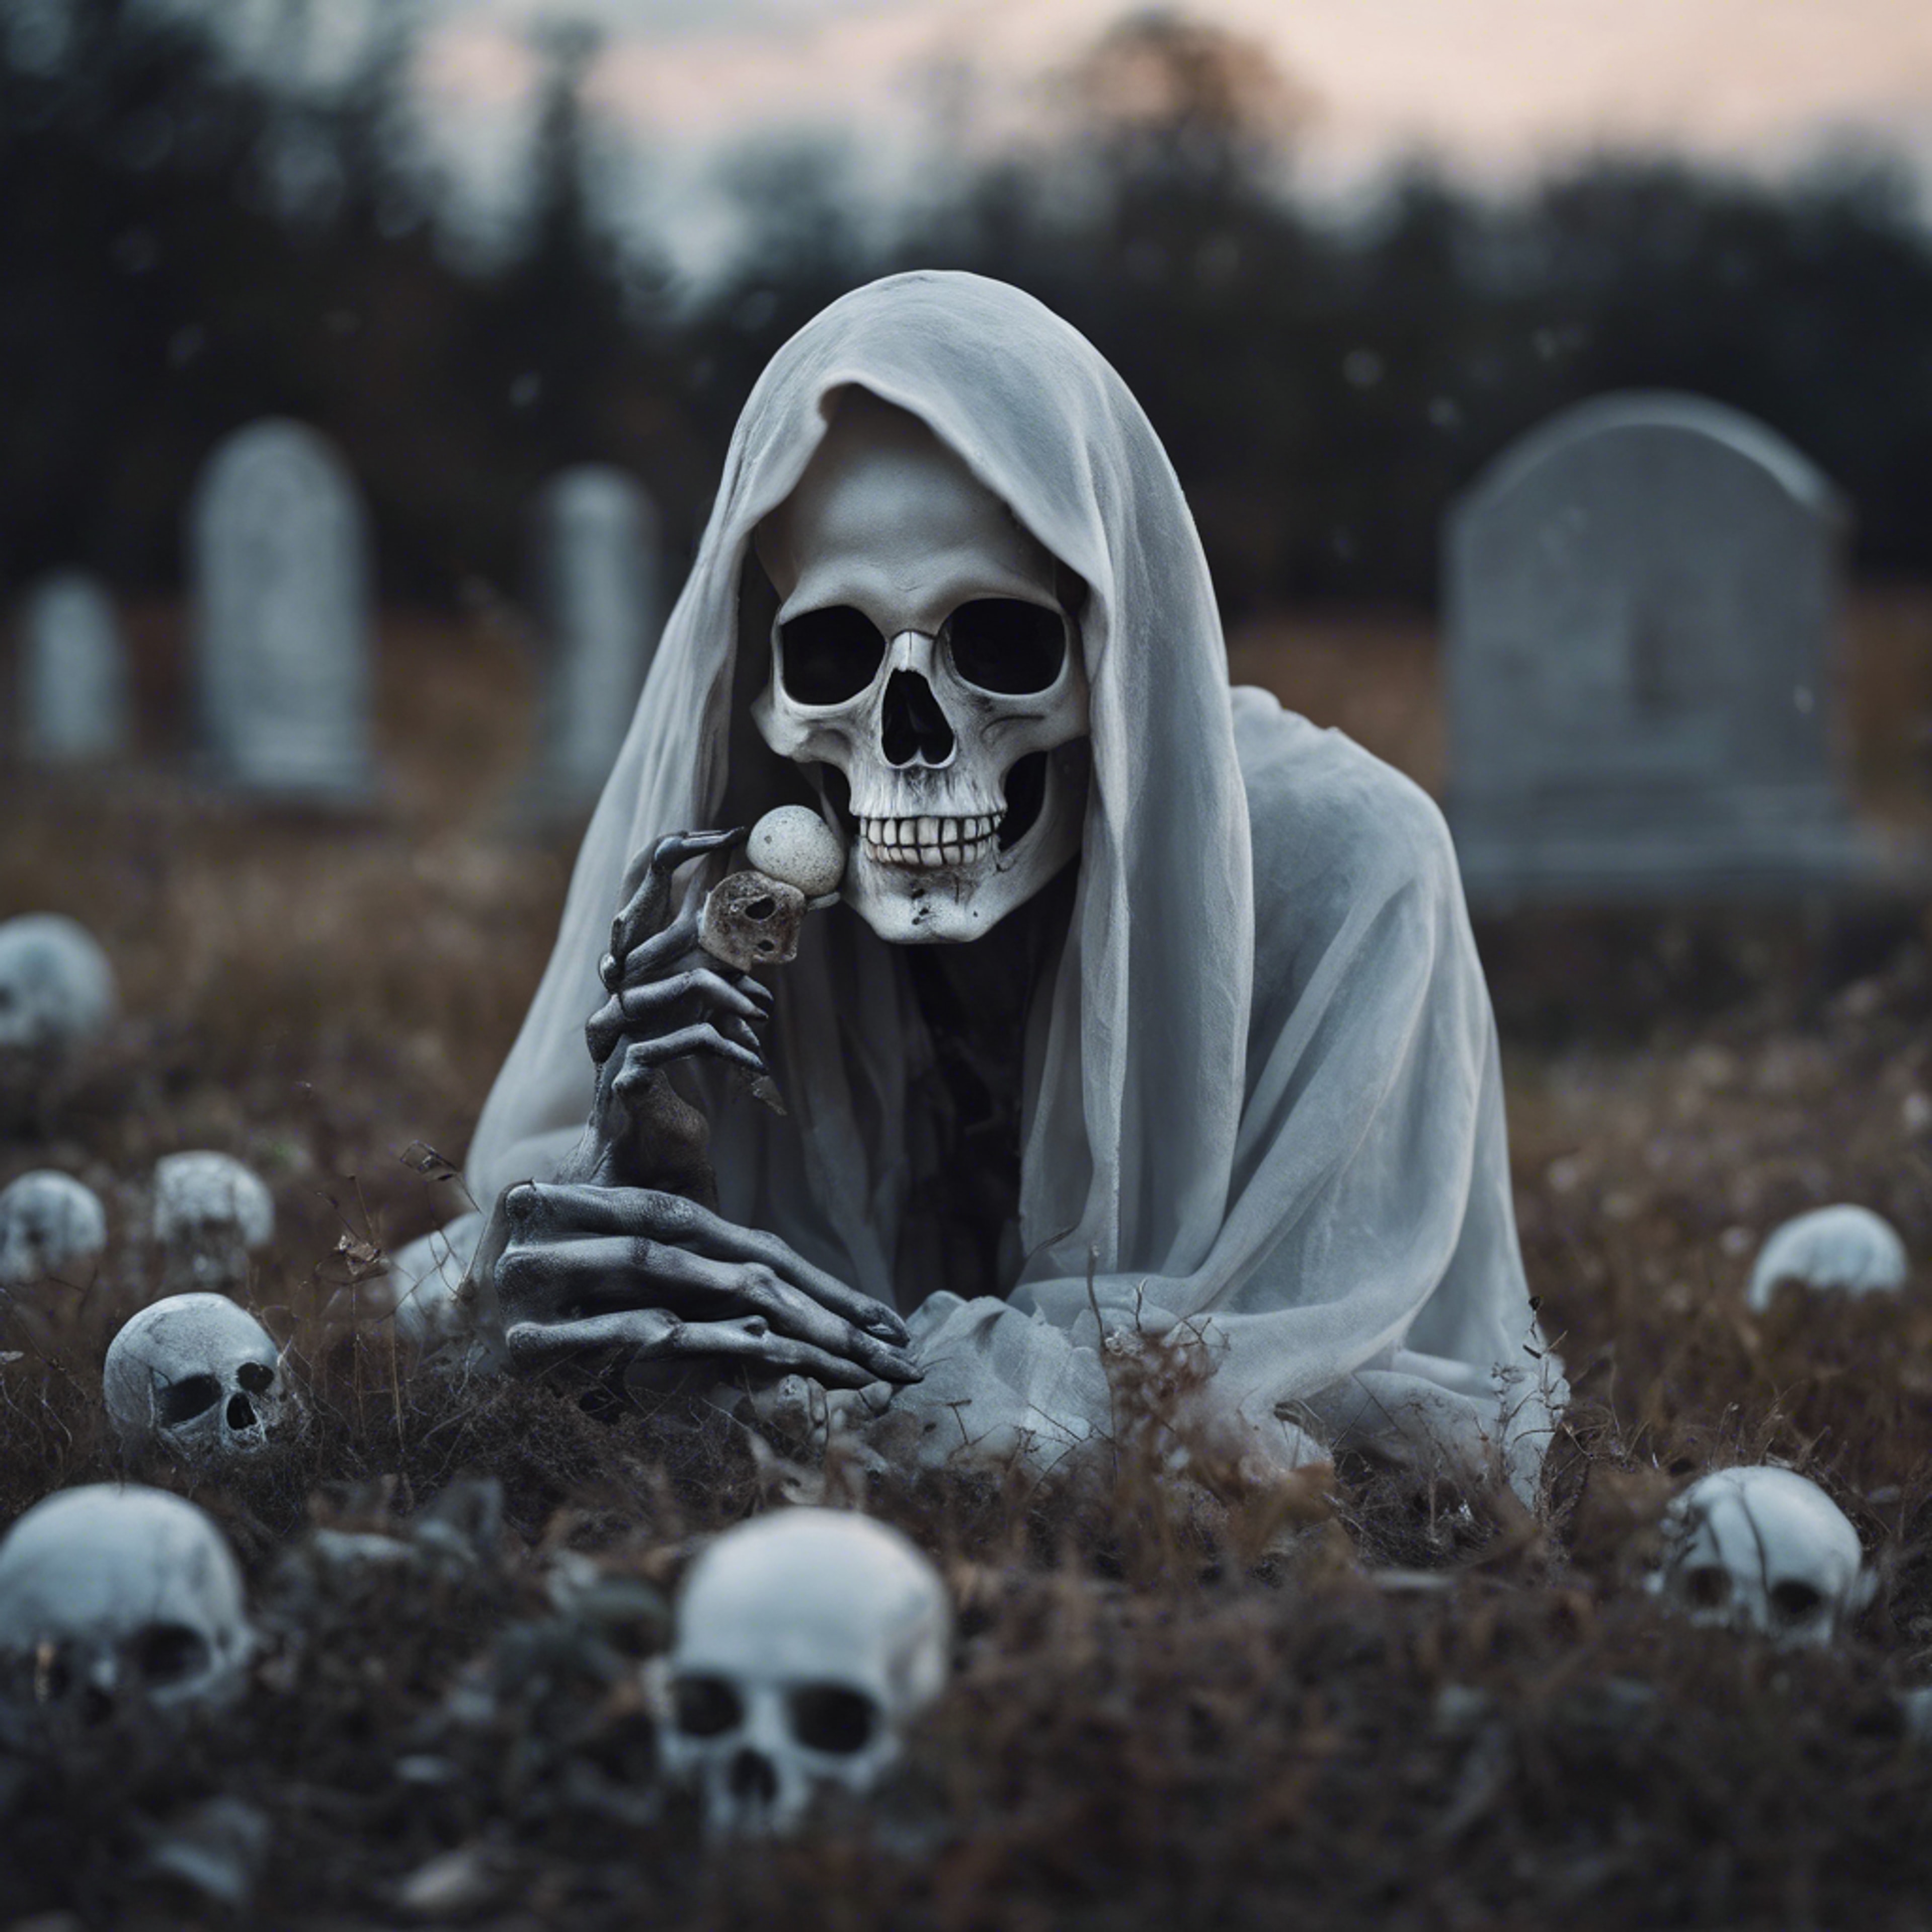 An ethereal ghost holding a gray skull in graveyard under the light of the full moon. duvar kağıdı[0d793a13818b4b628b9f]